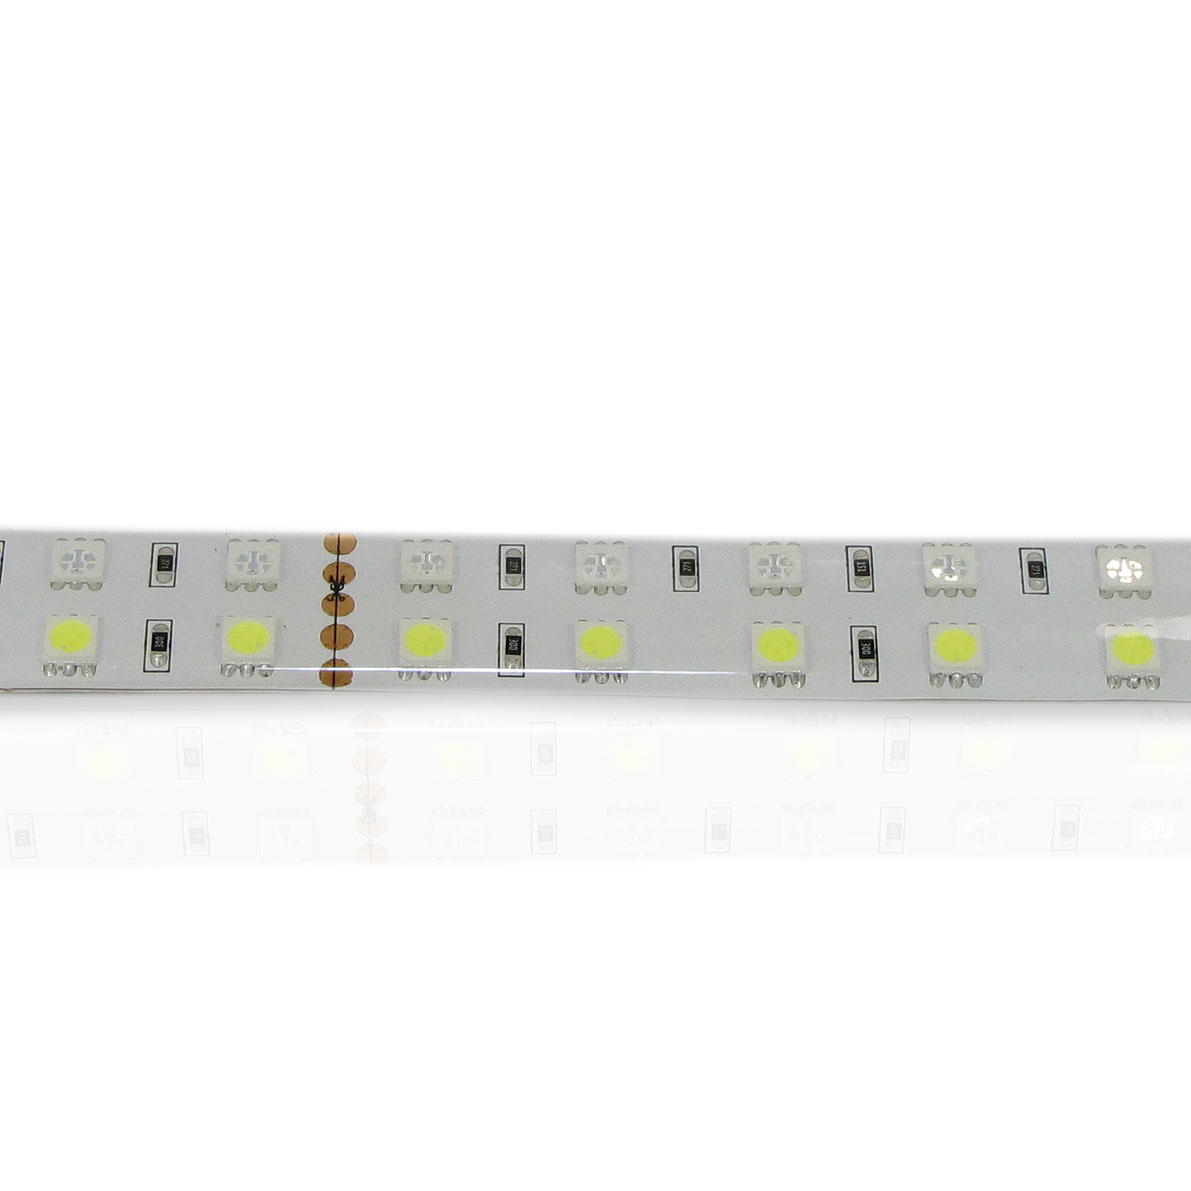 светодиодная лента standart pro class, 5050, 120 led/m, rgbw, 24v, ip65, артикул 31002